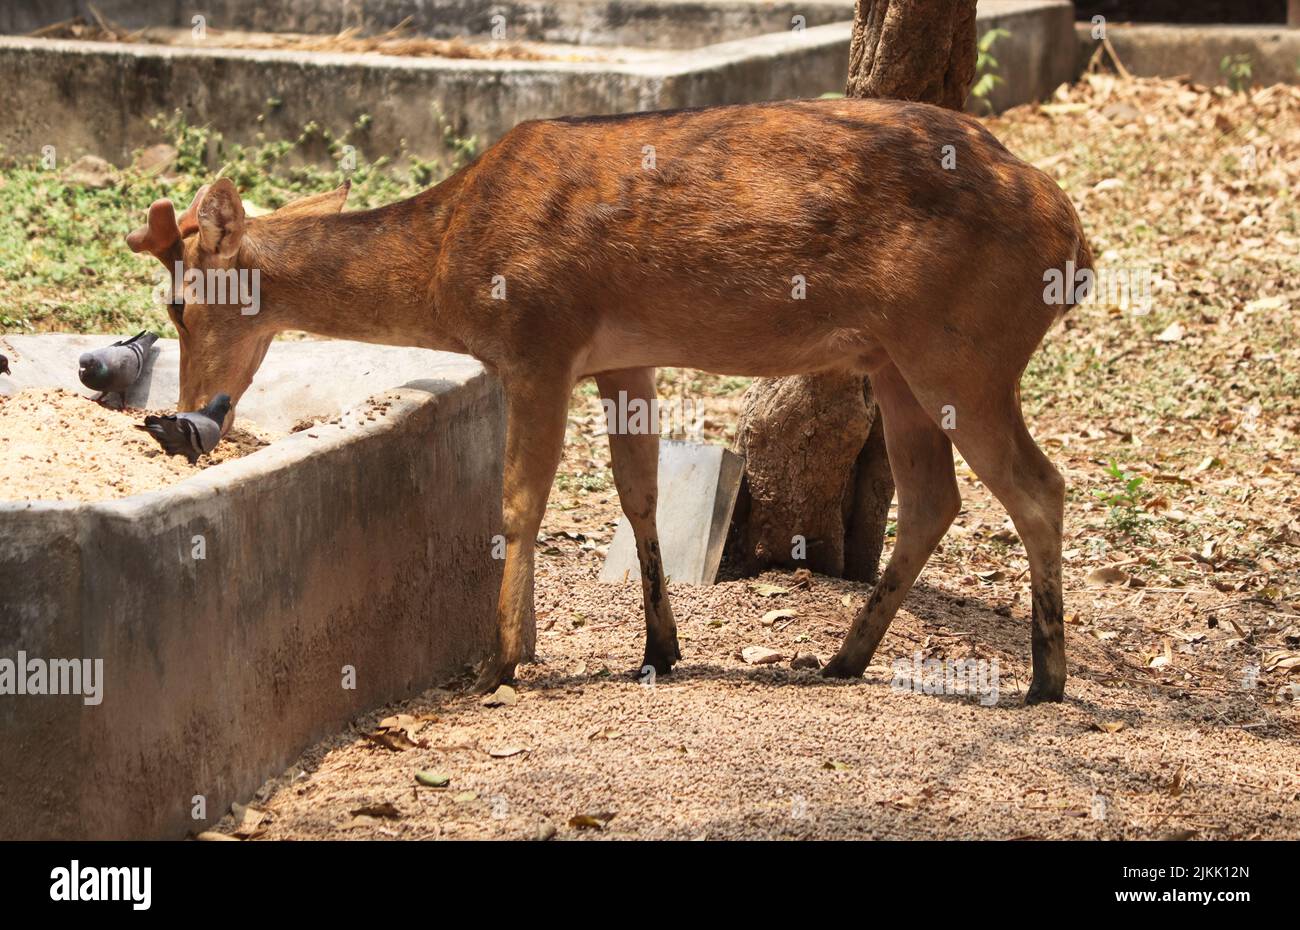 A closeup of a sambar deer eating at the park Stock Photo